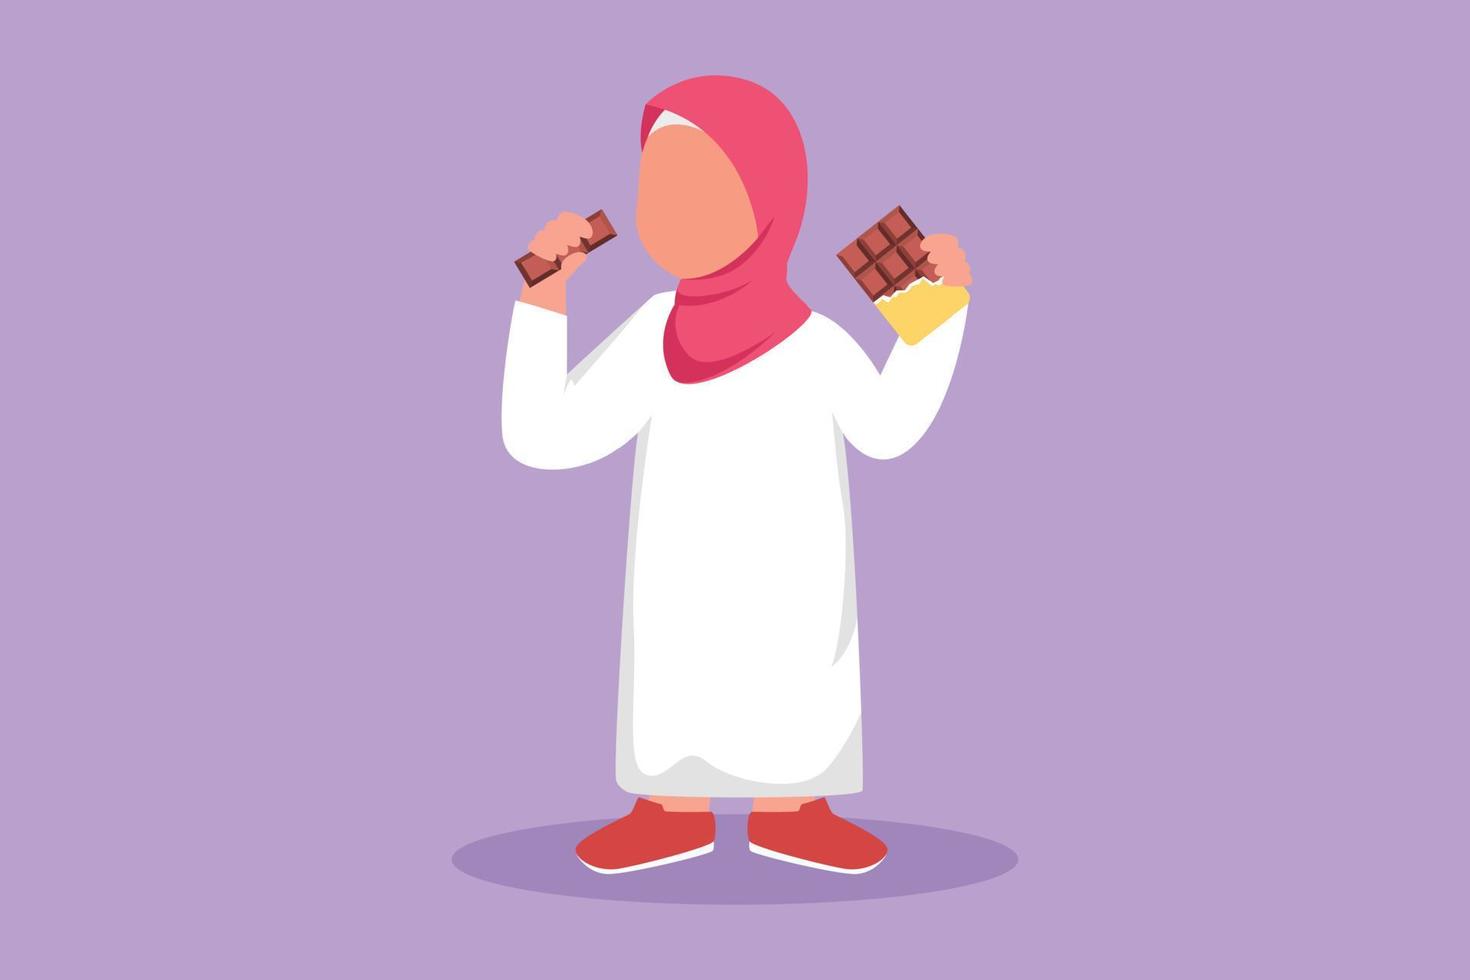 Dibujo de estilo plano de dibujos animados Un niño pequeño árabe come una barra de chocolate envuelta en un paquete. adorable niña disfruta de un postre dulce. golosina favorita para los niños. ilustración vectorial de diseño gráfico vector